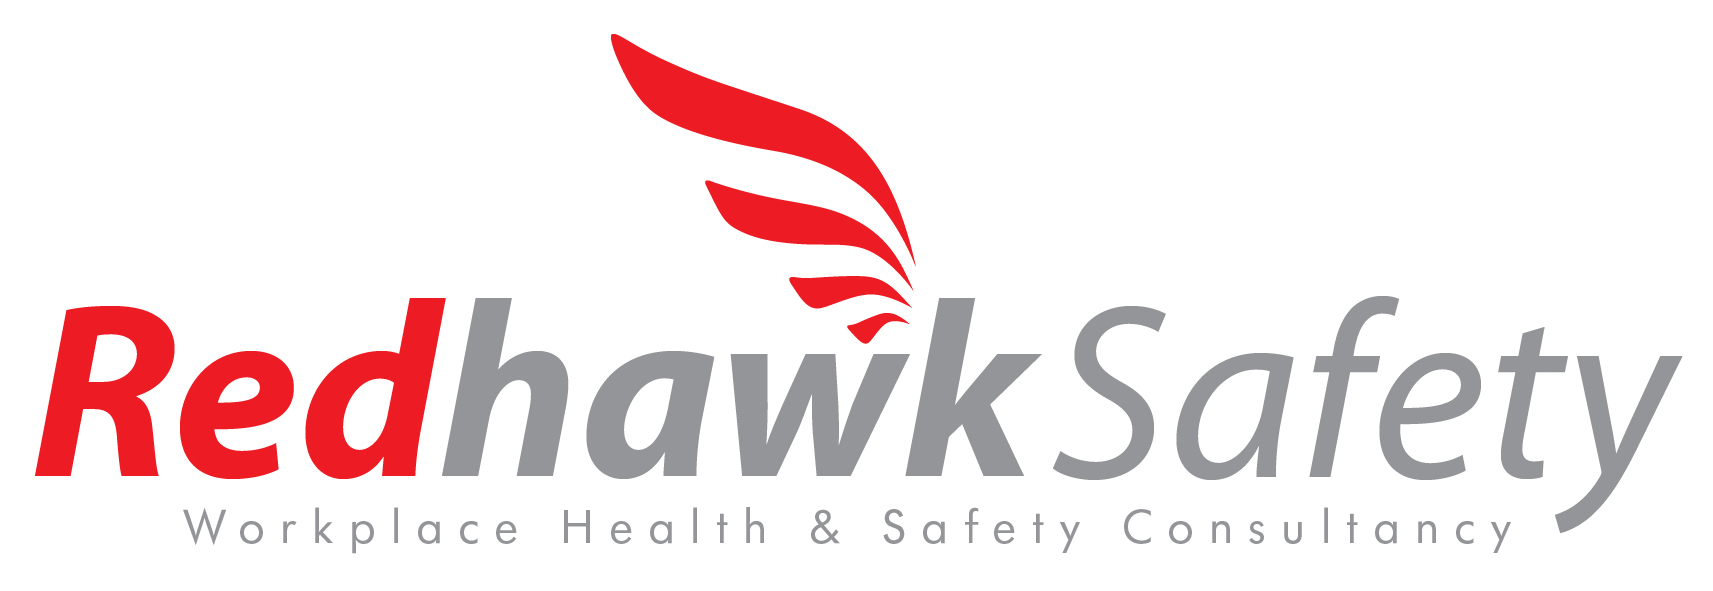 Redhawk Safety